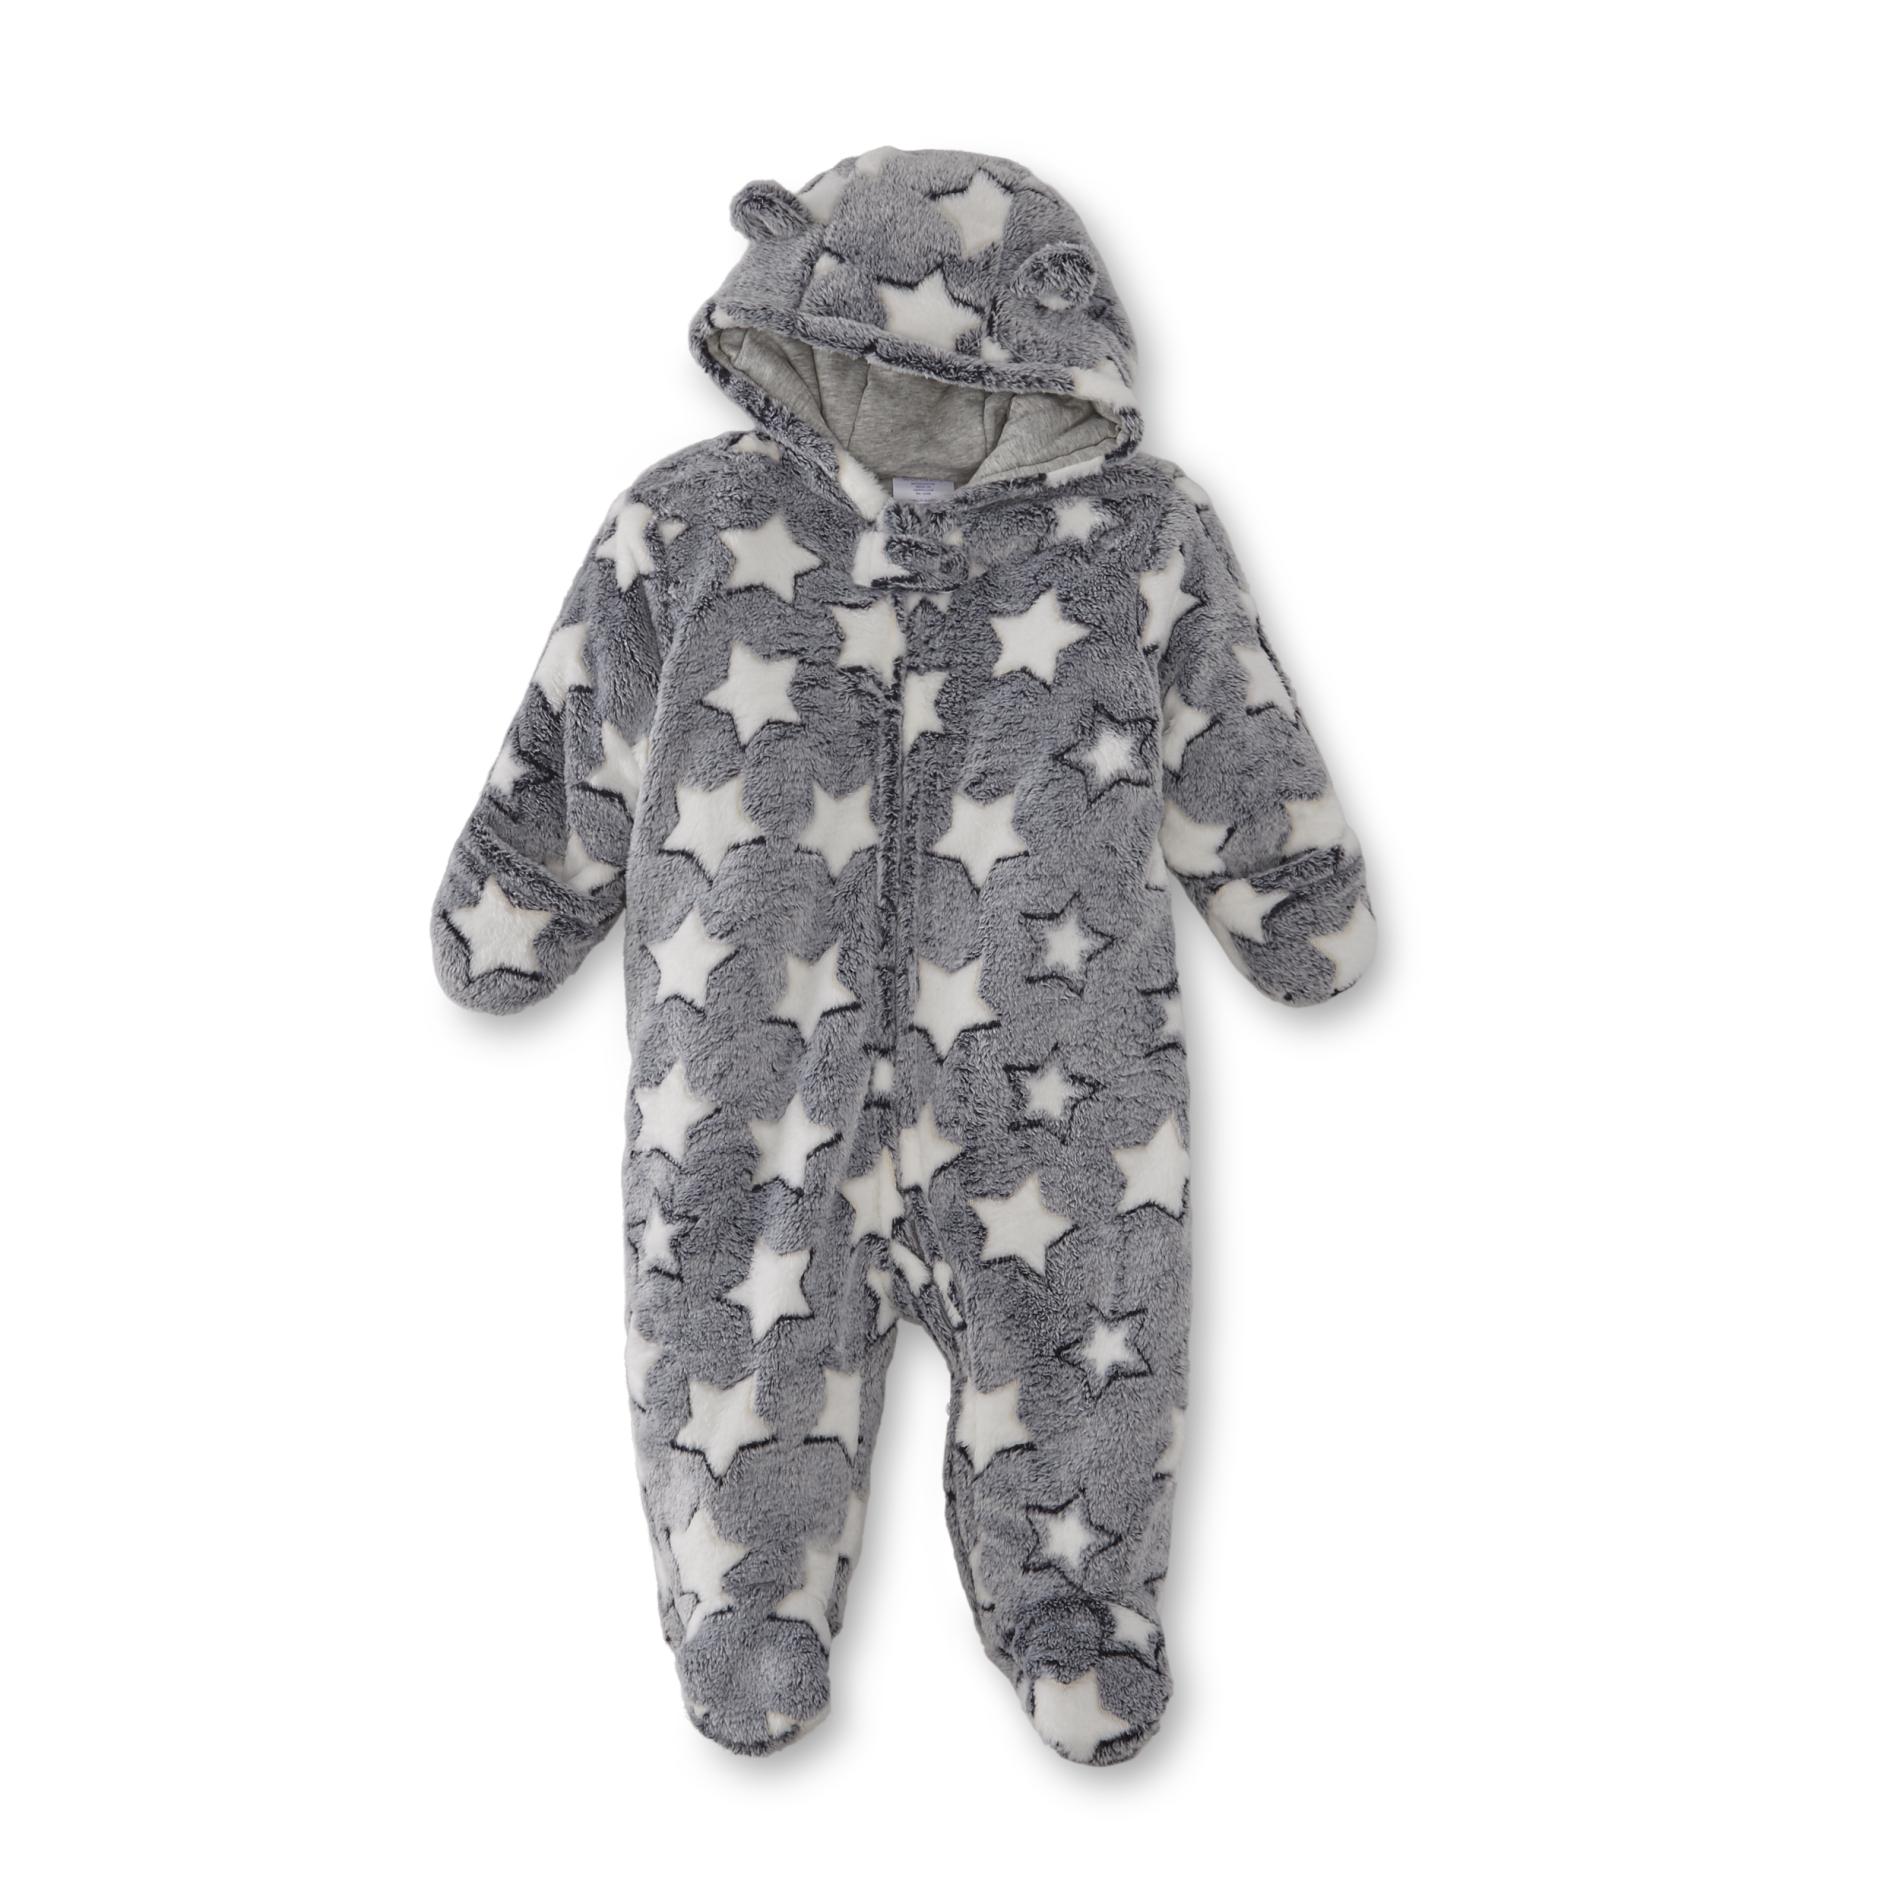 Little Wonders Infants' Plush Snowsuit - Star